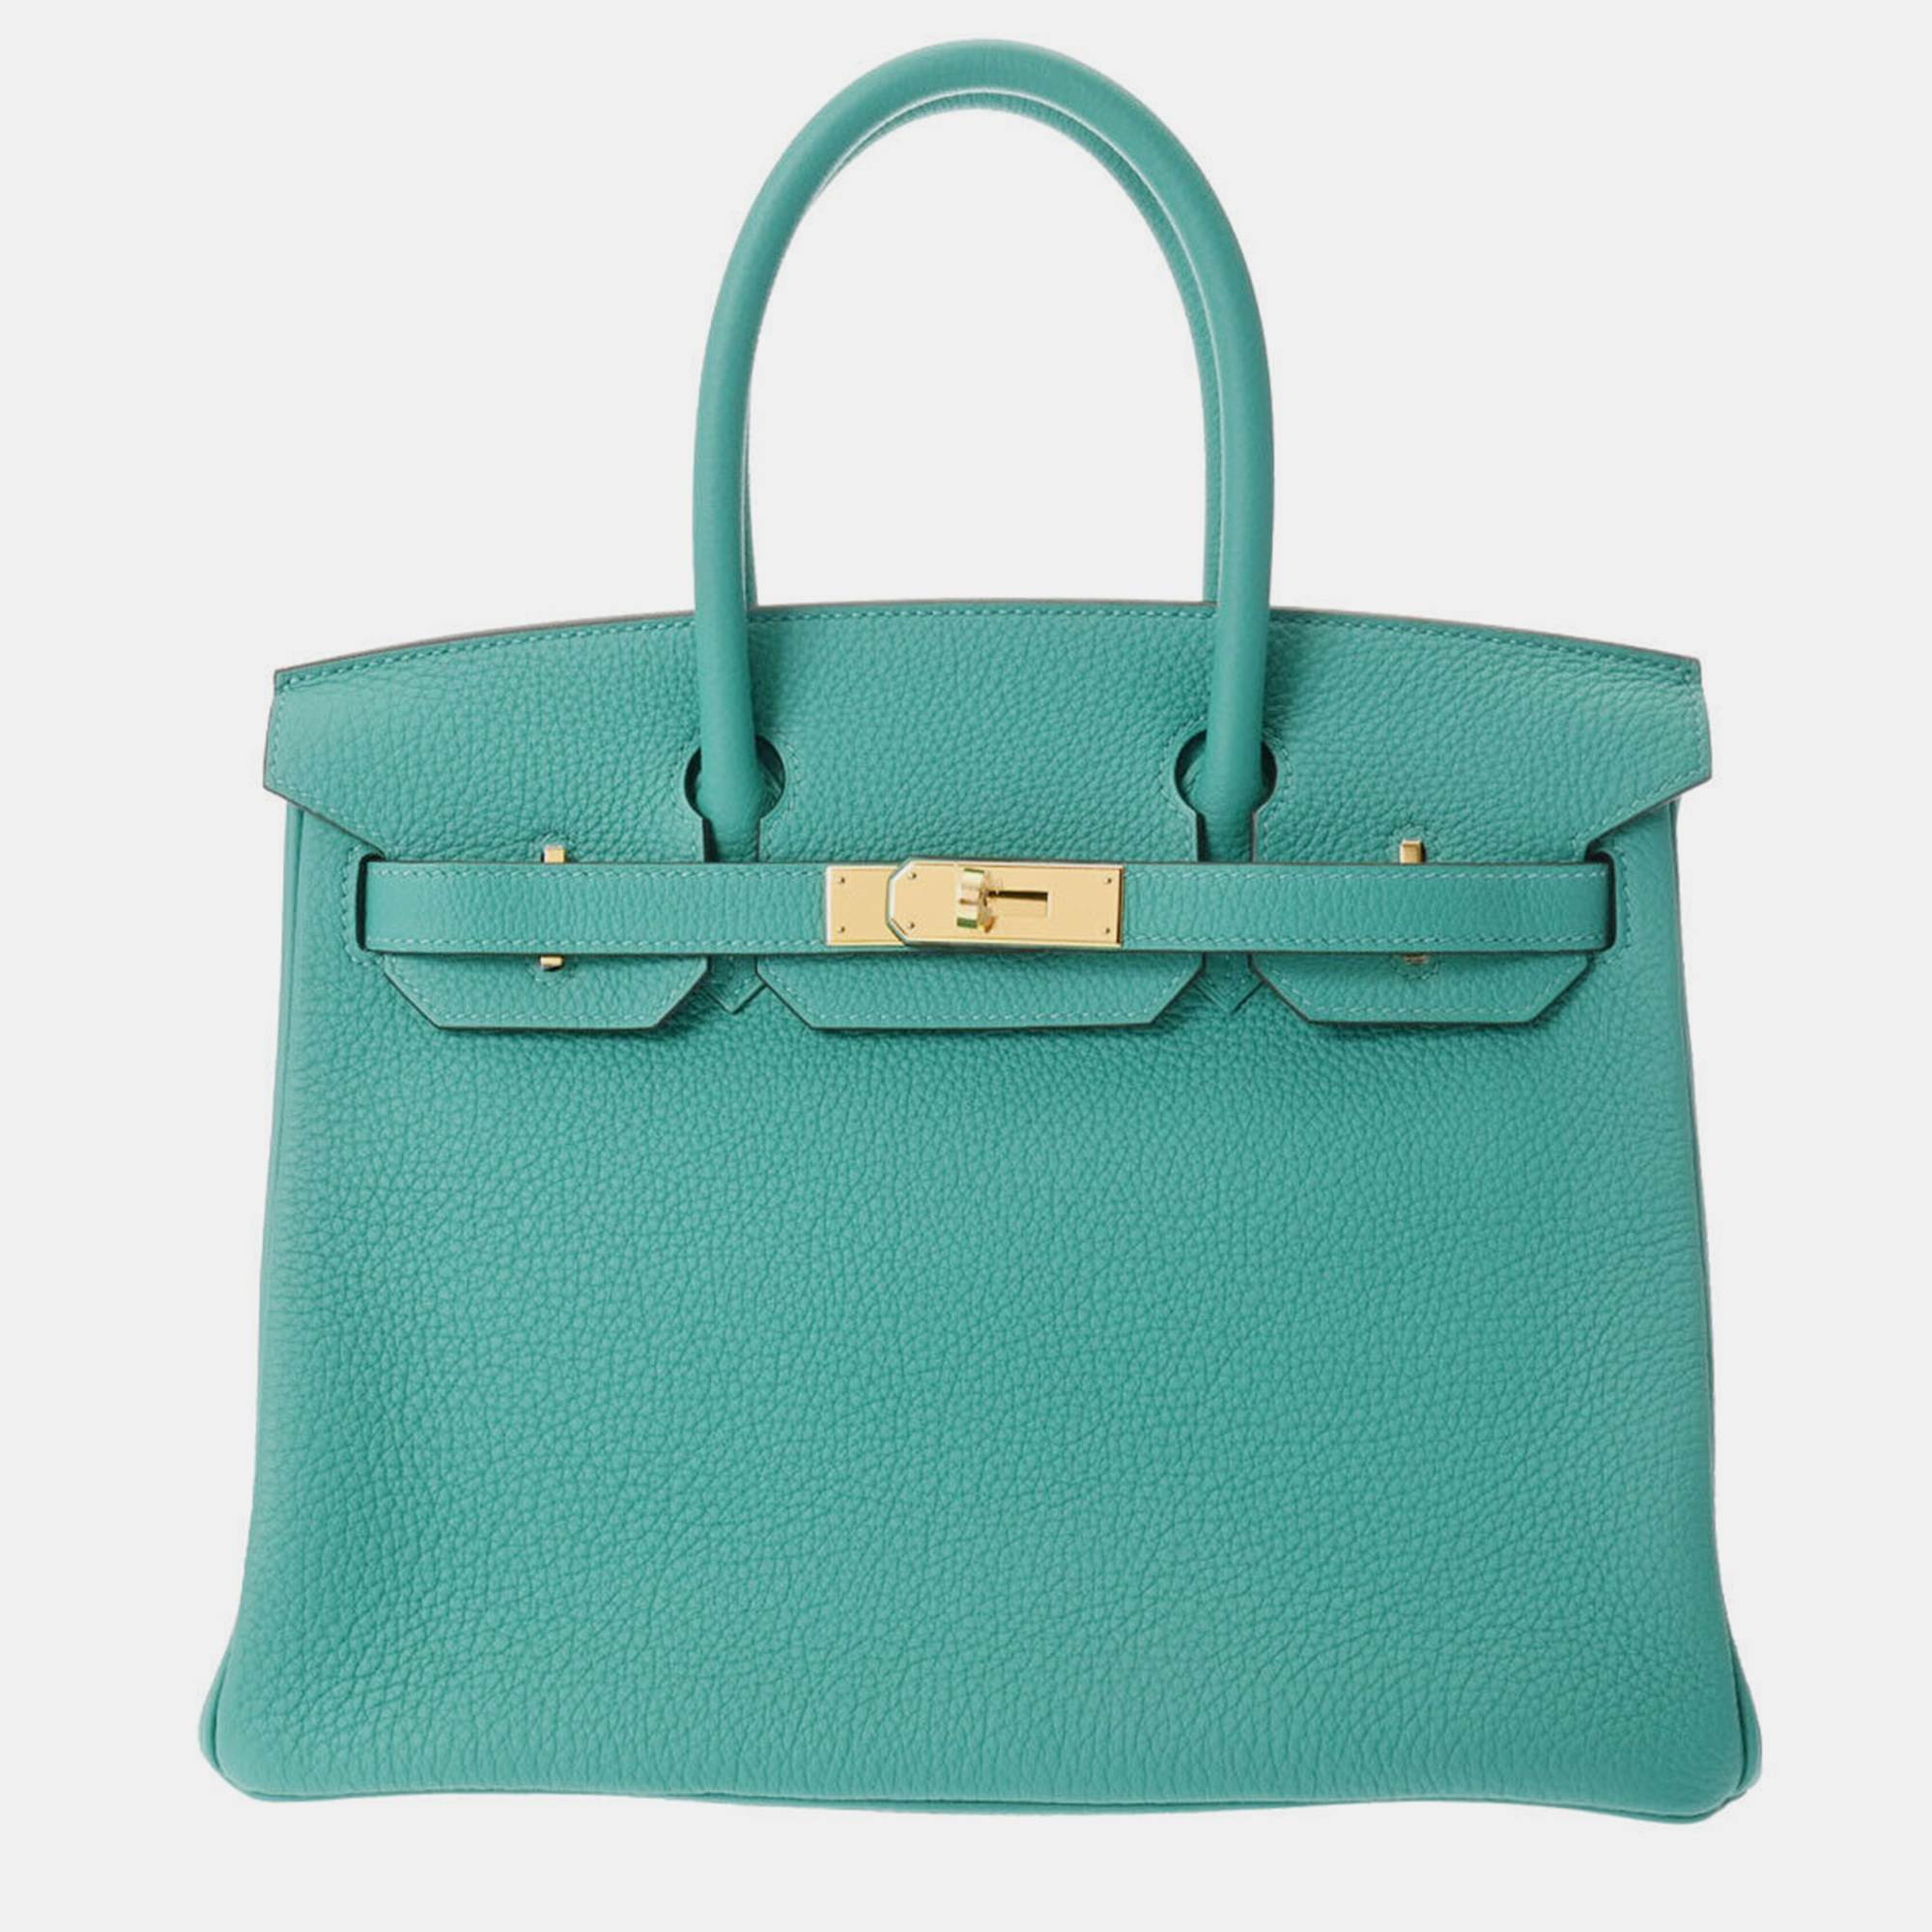 Pre-owned Hermes Green Togo Leather Birkin 30 Handbag